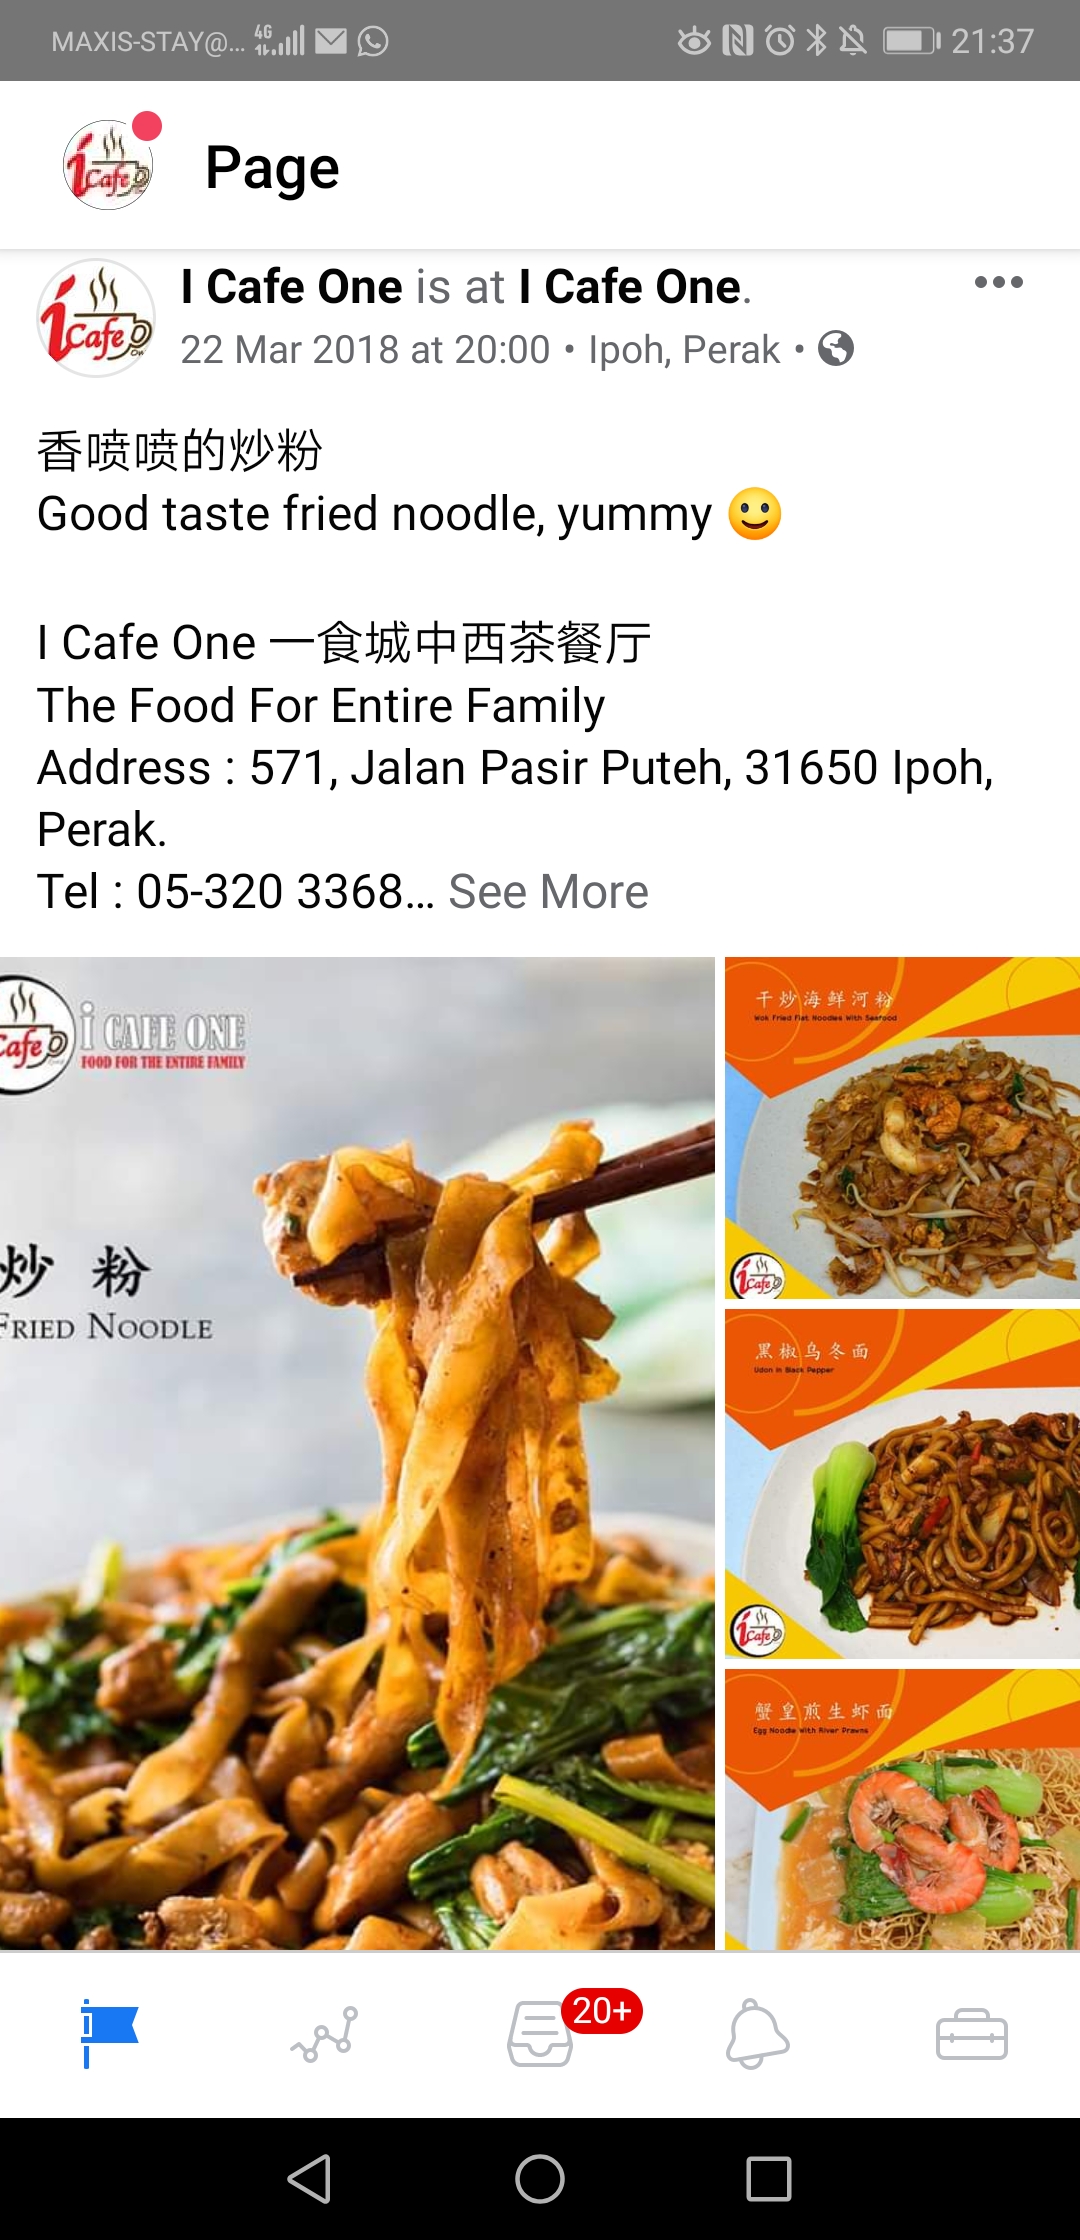 Food & Beverage Facebook advertising in Ipoh, Perak